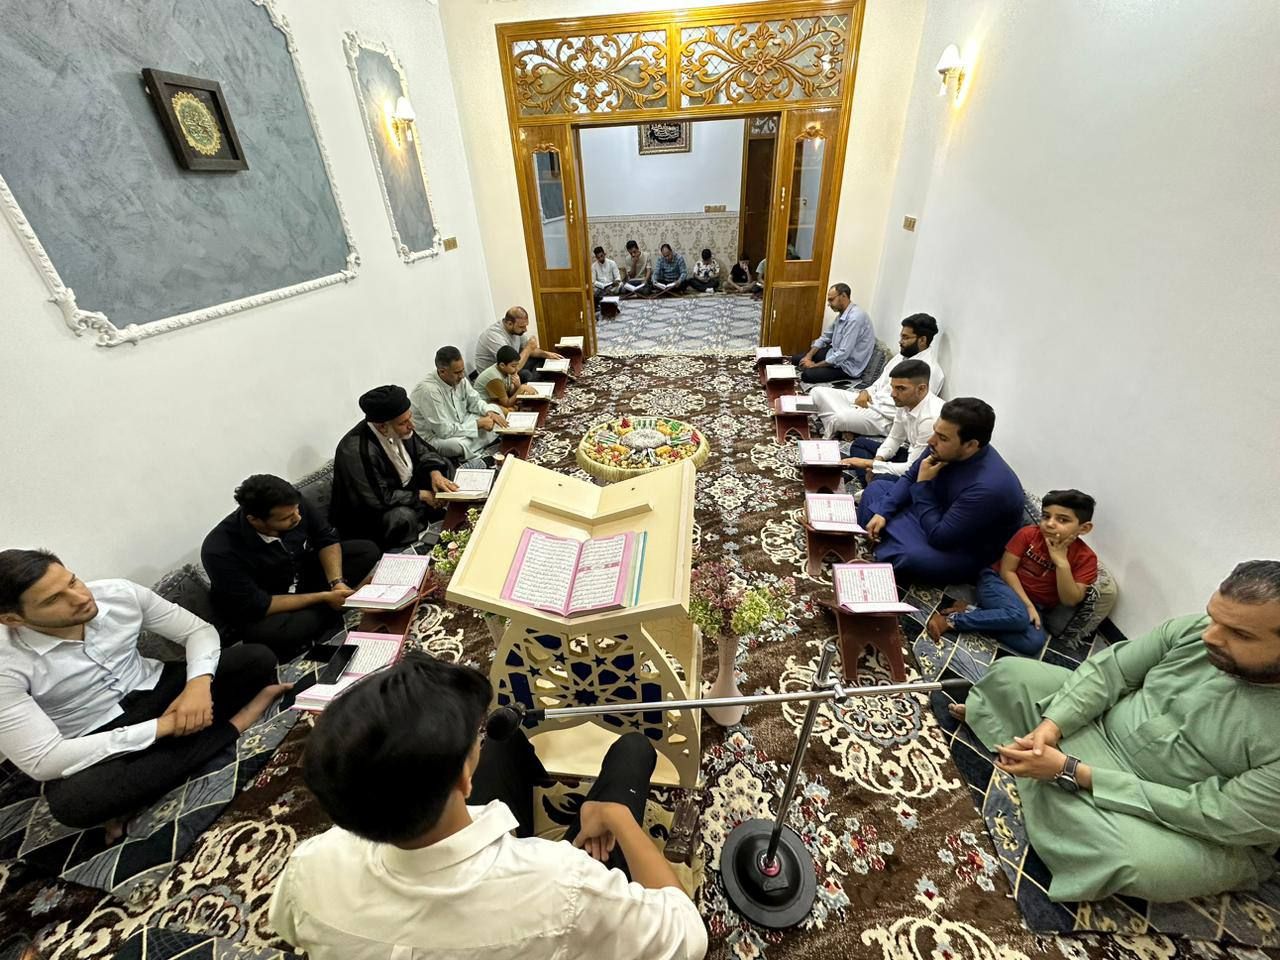 المَجمَع العلميّ يطلق مشروع المحافل القرآنية المتنقلة في قضاء الهندية